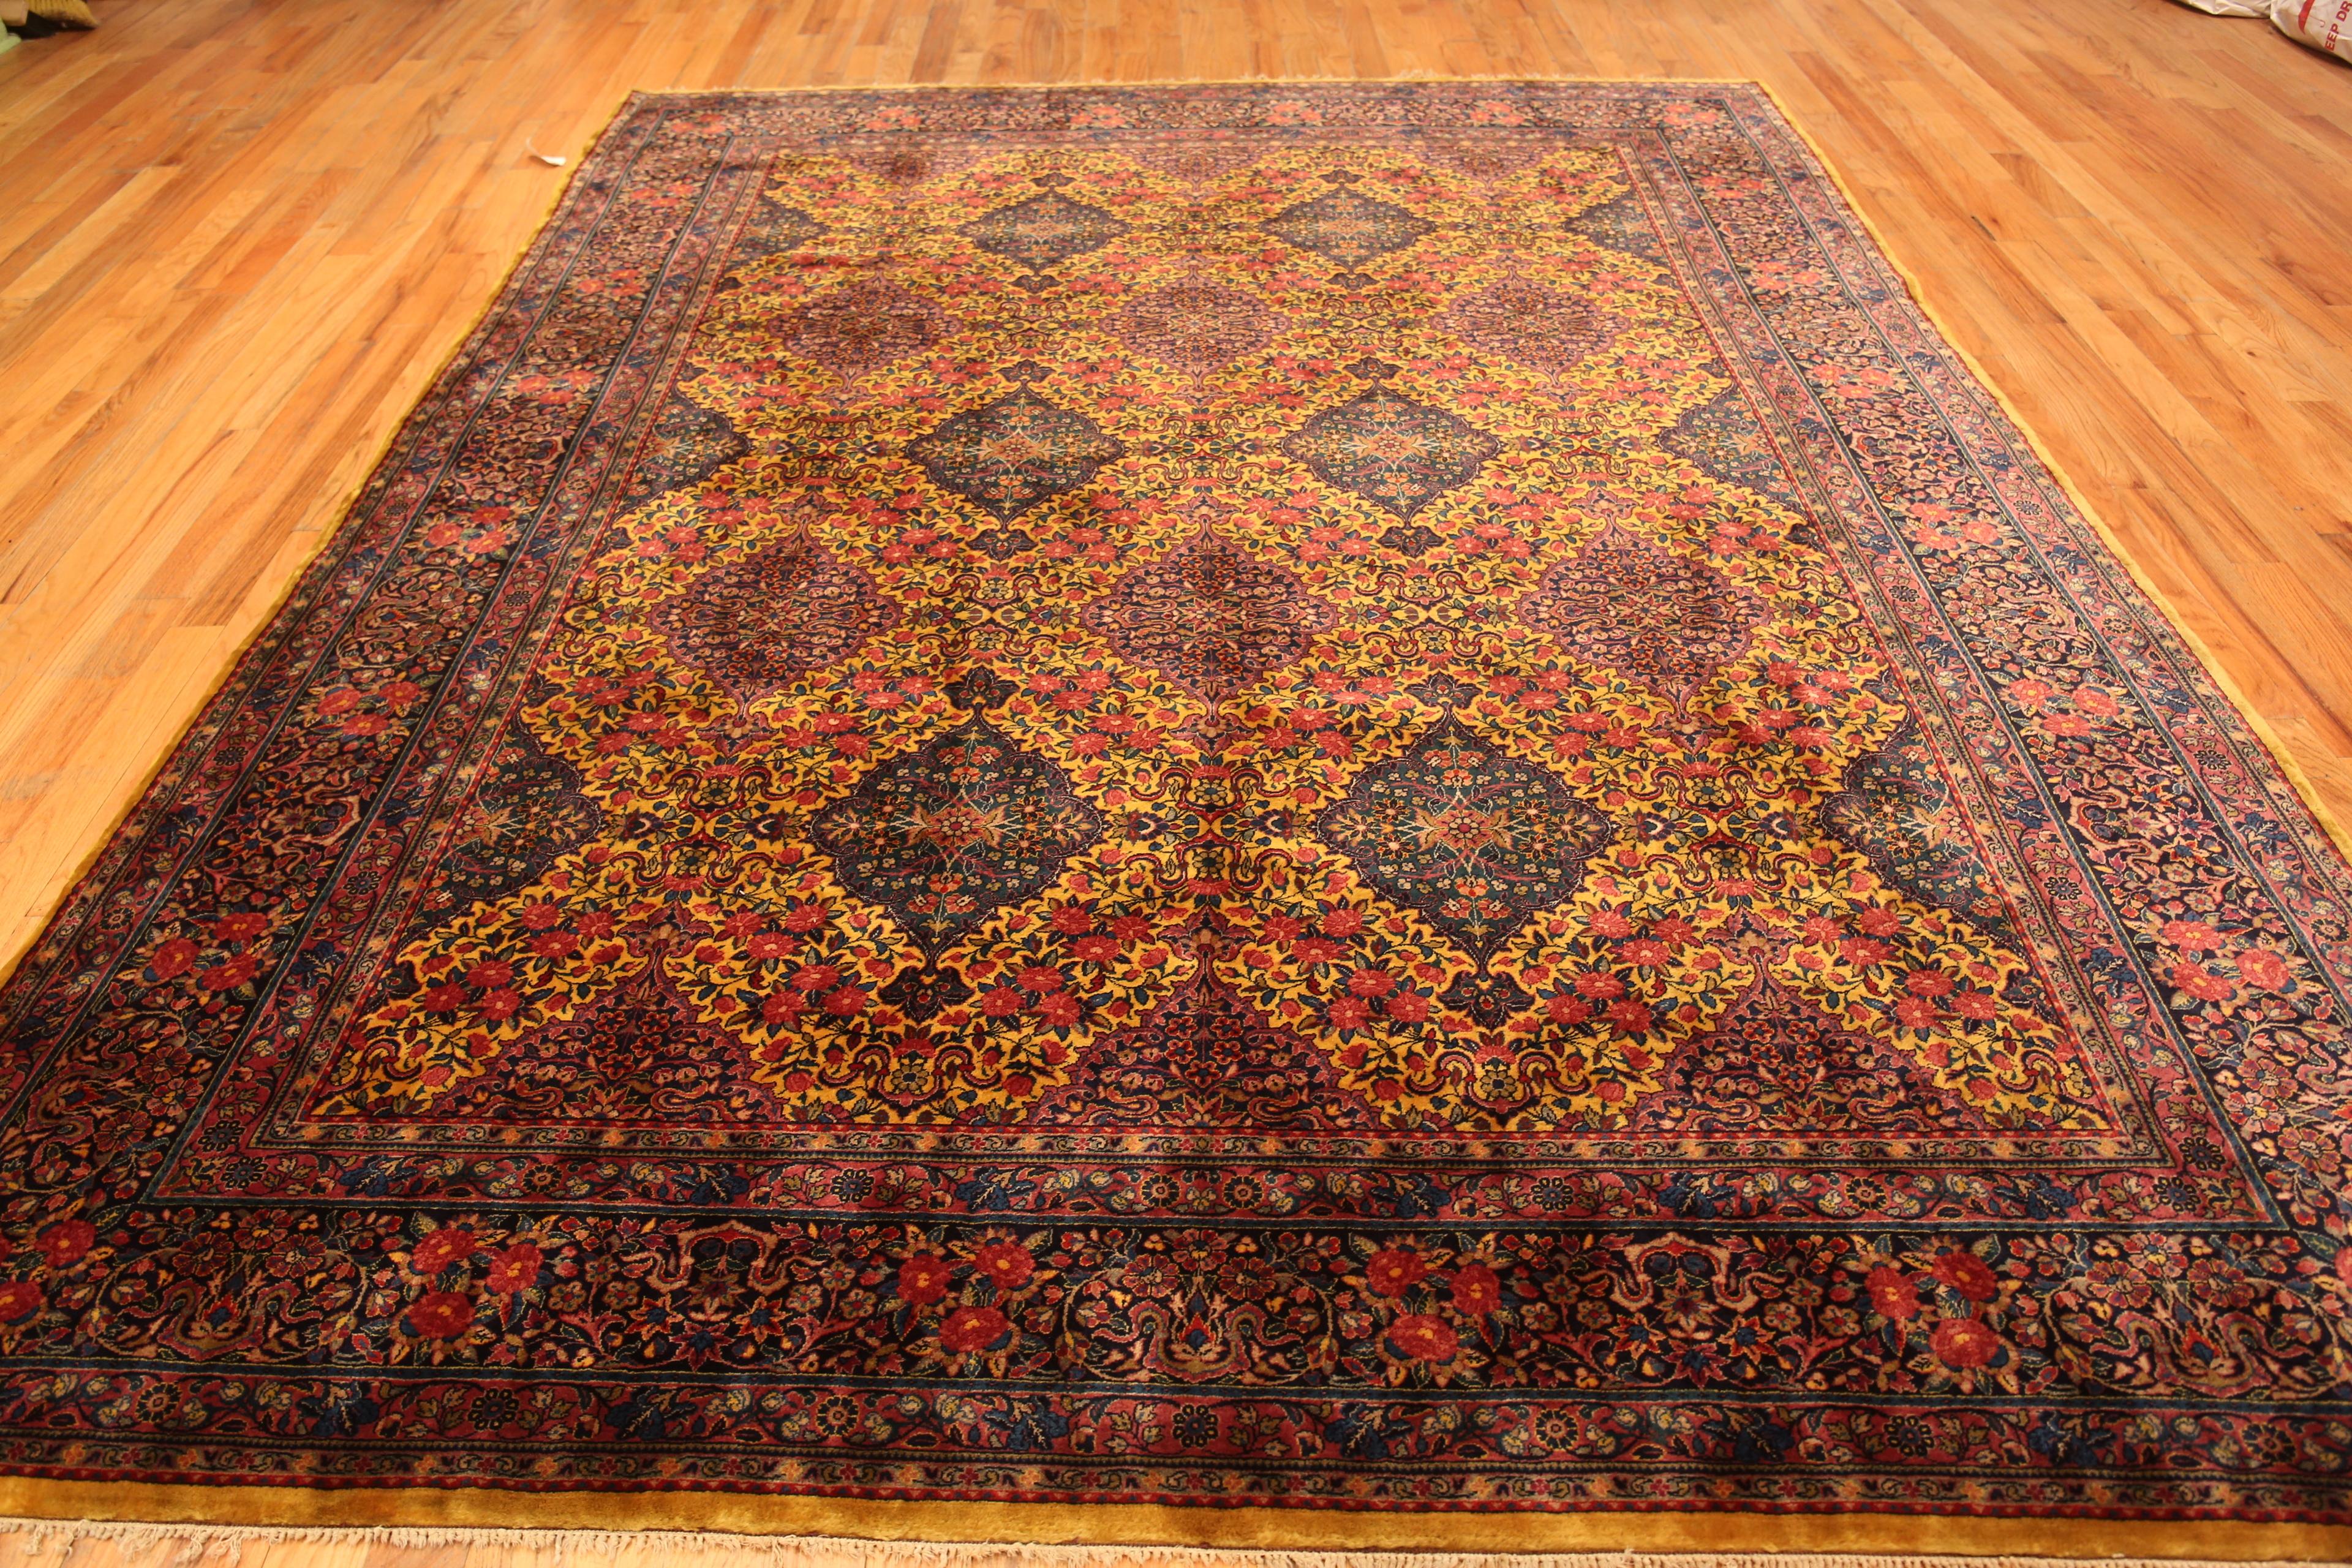 Antiker persischer Kashan-Teppich, Herkunftsland: Persien, CIRCA Datum: 1900. Größe: 2,69 m x 3,58 m (8 ft 10 in x 11 ft 9 in)

